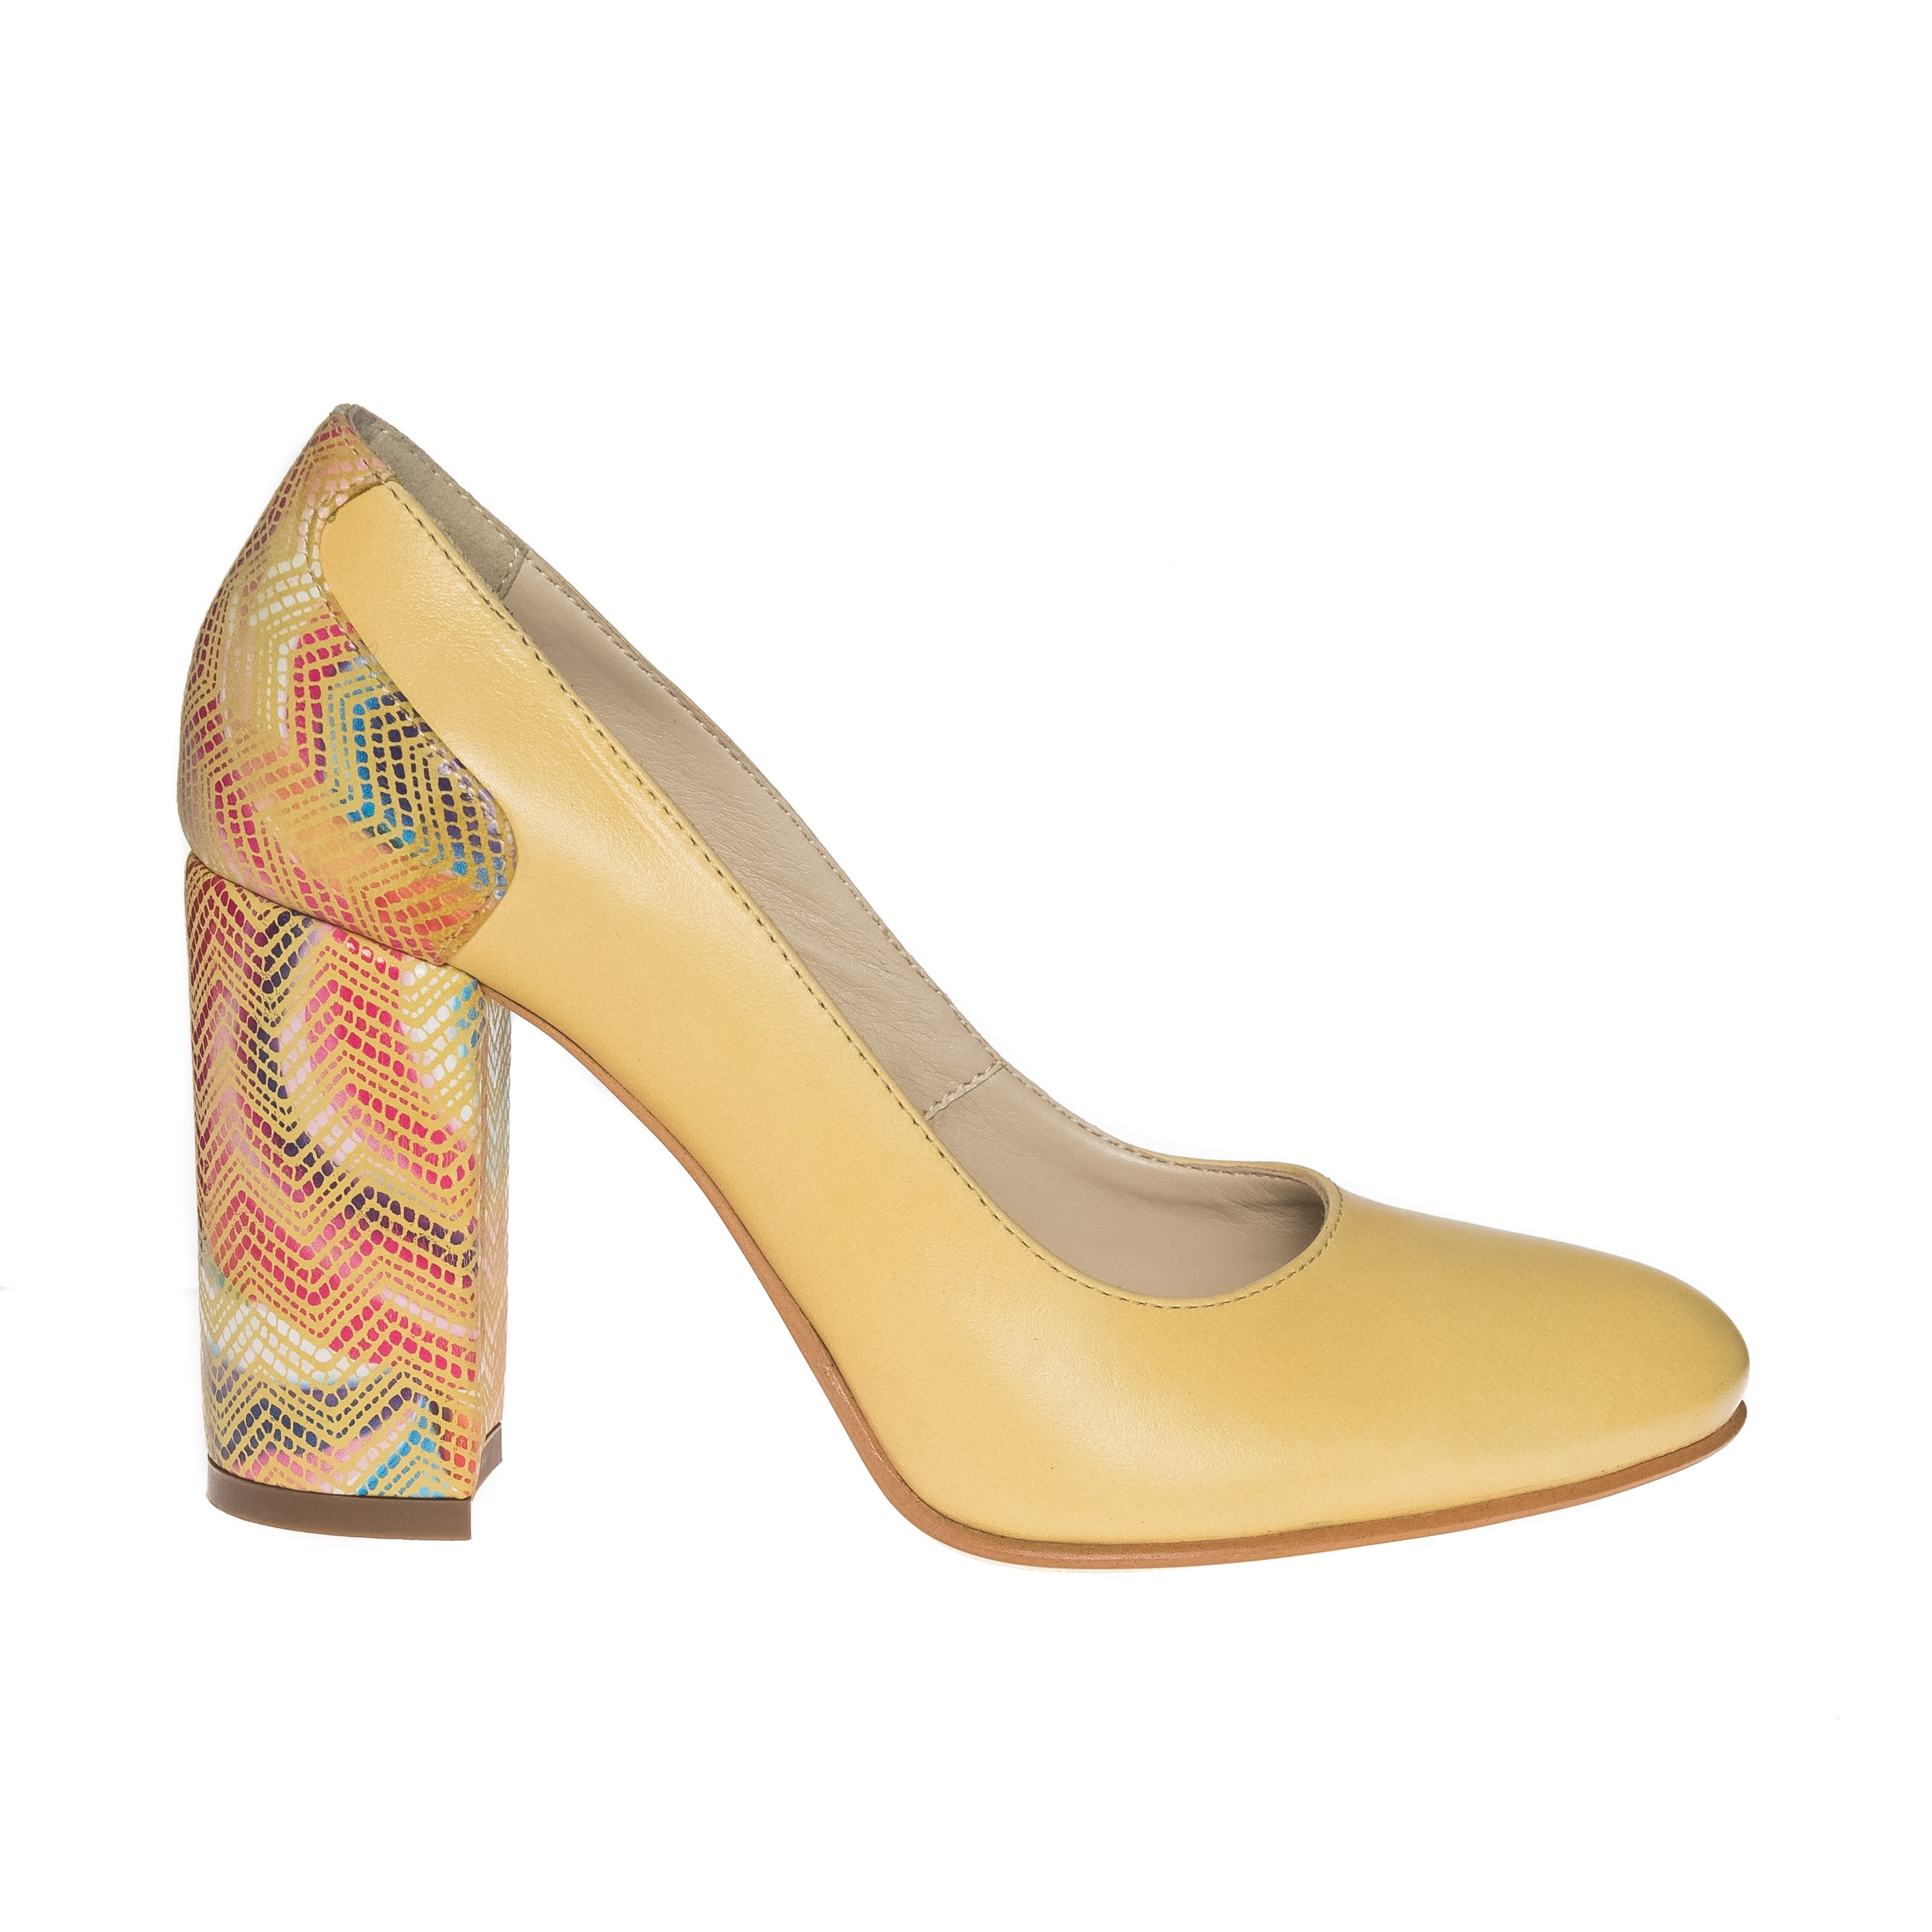 Pantofi dama din piele naturala - Galben cu toc multicolor - 112 GM